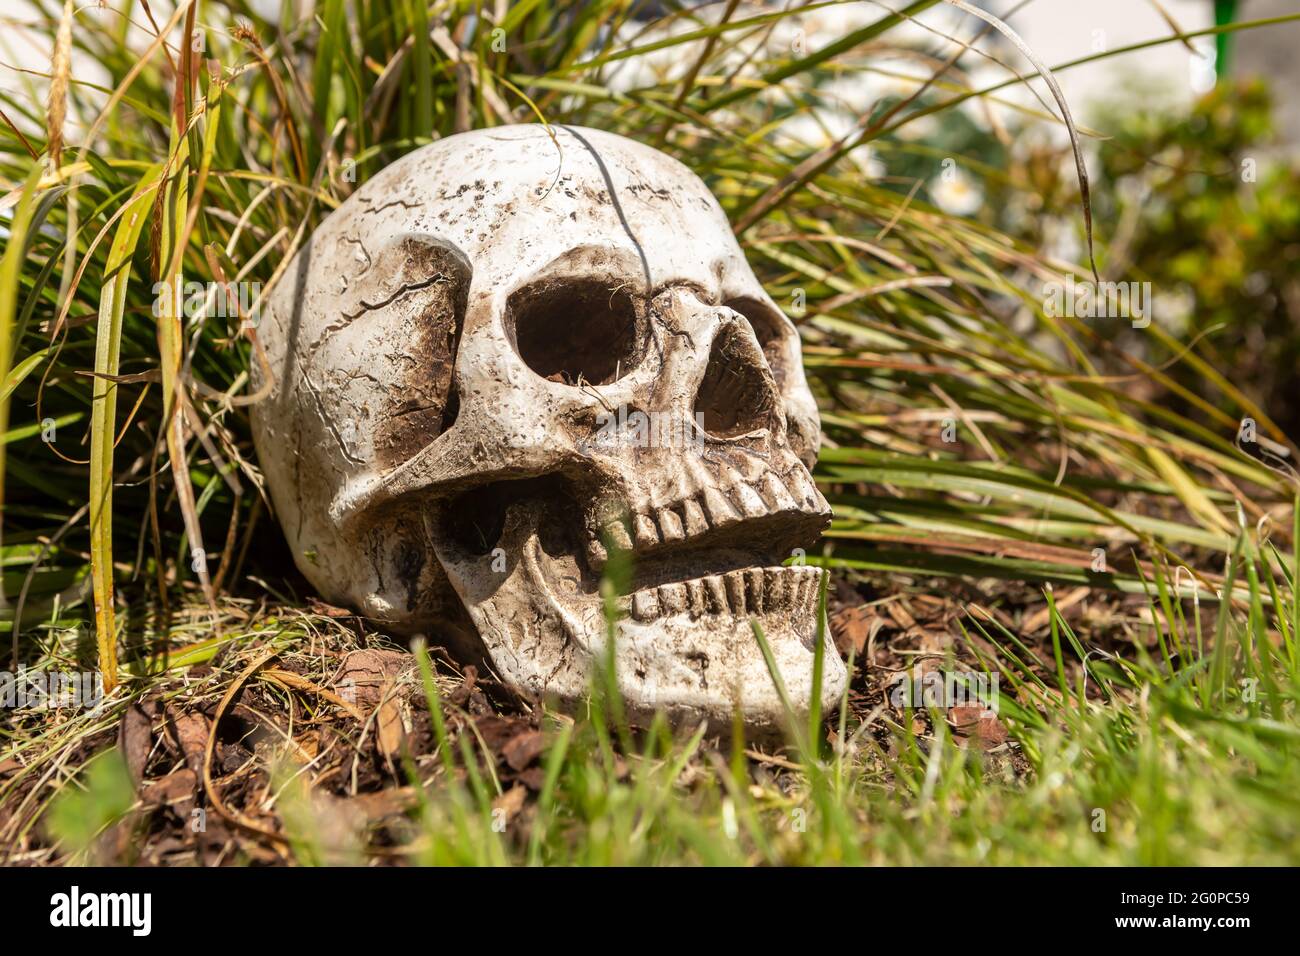 a human skull as an offbeat garden decoration Stock Photo